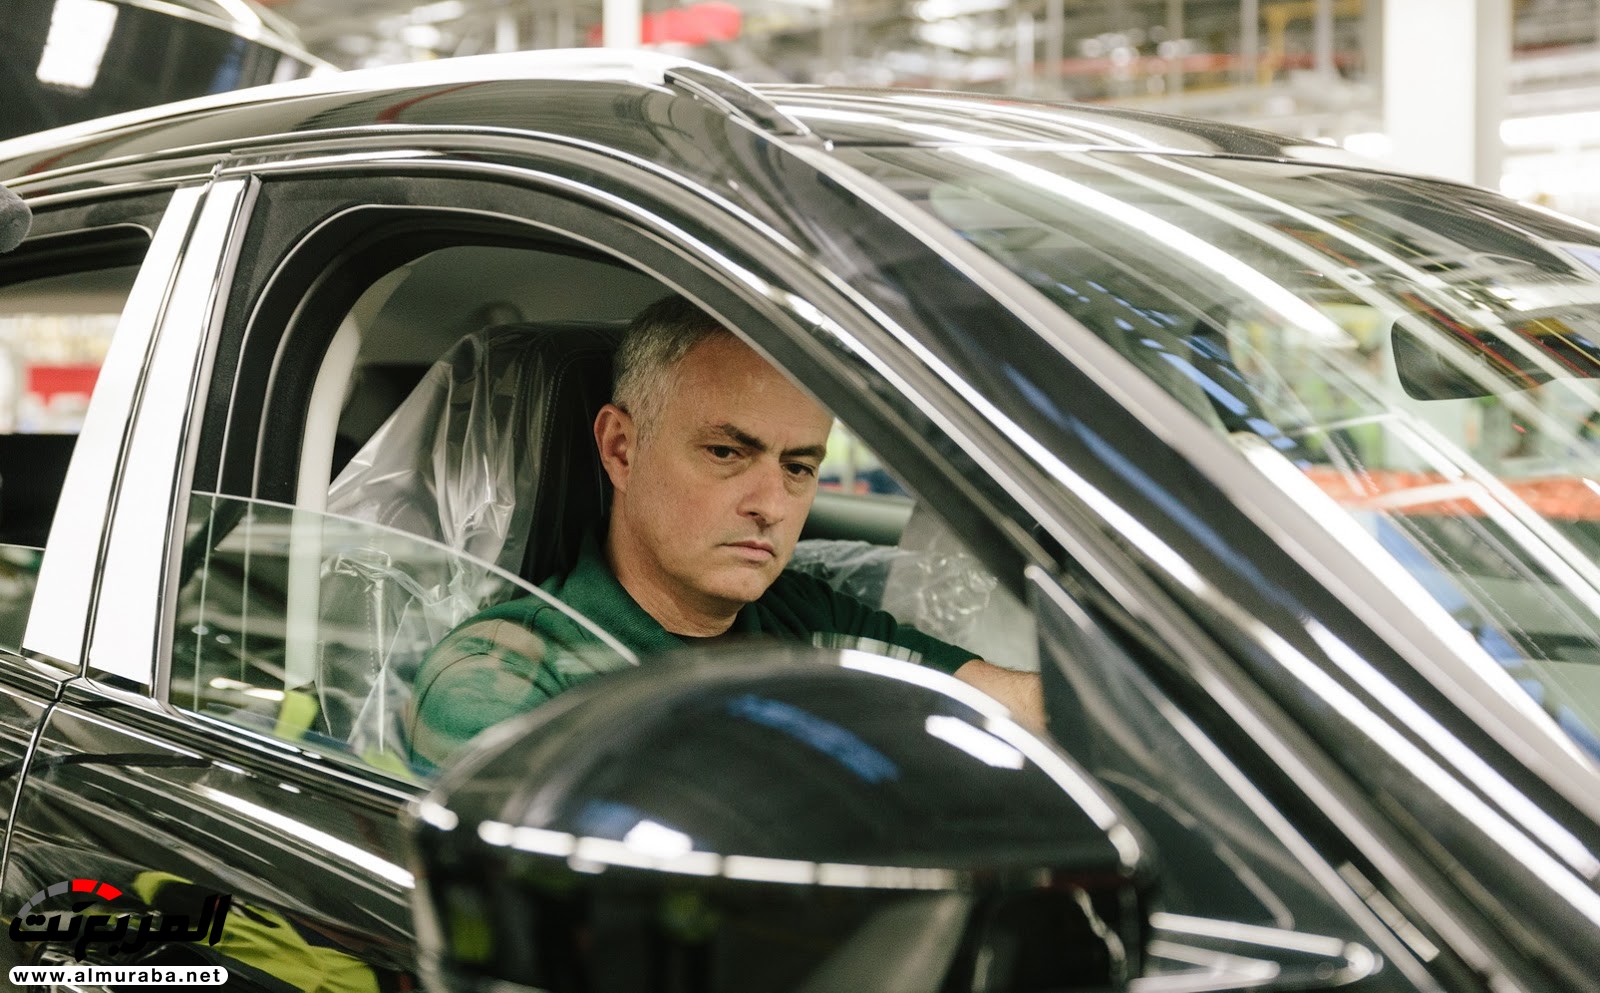 مدير مانشستر يونايتد يمضي يوما في بناء سيارة بمصنع جاكوار "فيديو وصور" 12